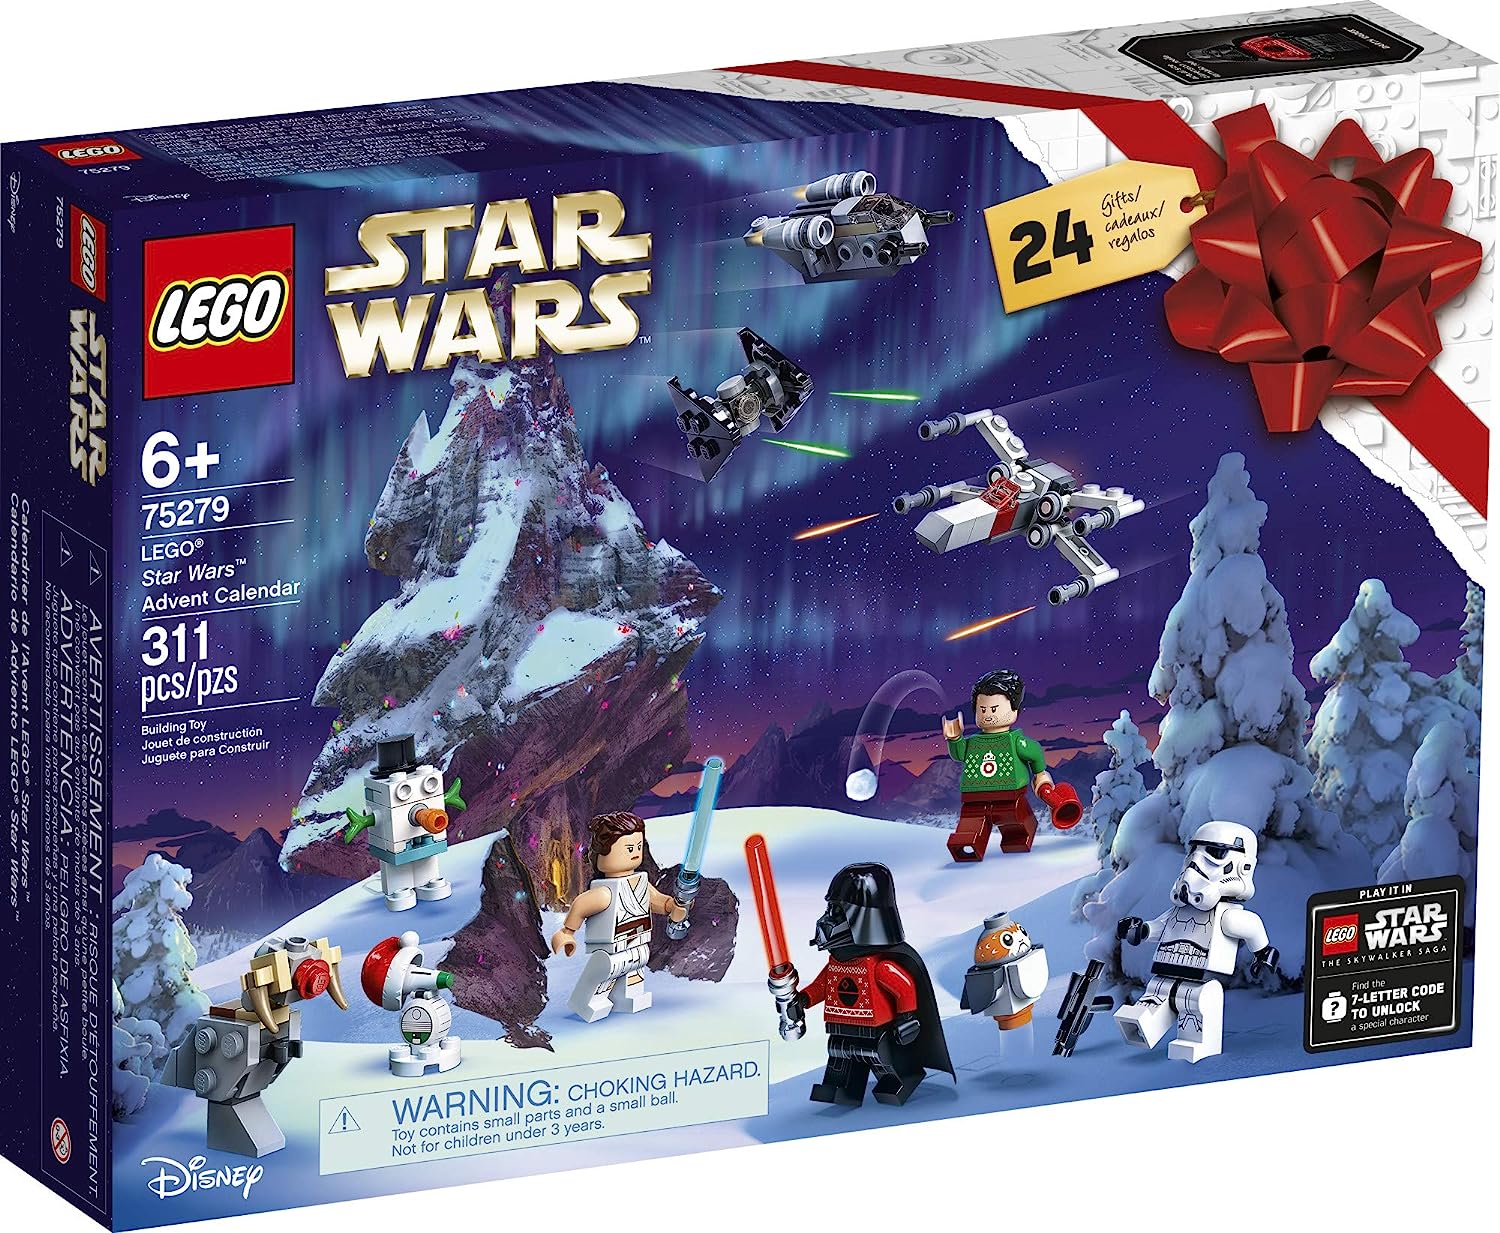 最高の レゴ スターウォーズ Lego Star Wars Advent Calendar Building Kit For Kids Fun Calendar With Star Wars Buildable Toys Plus Code To Unlock Character In Star Wars The Skywalker Saga Game